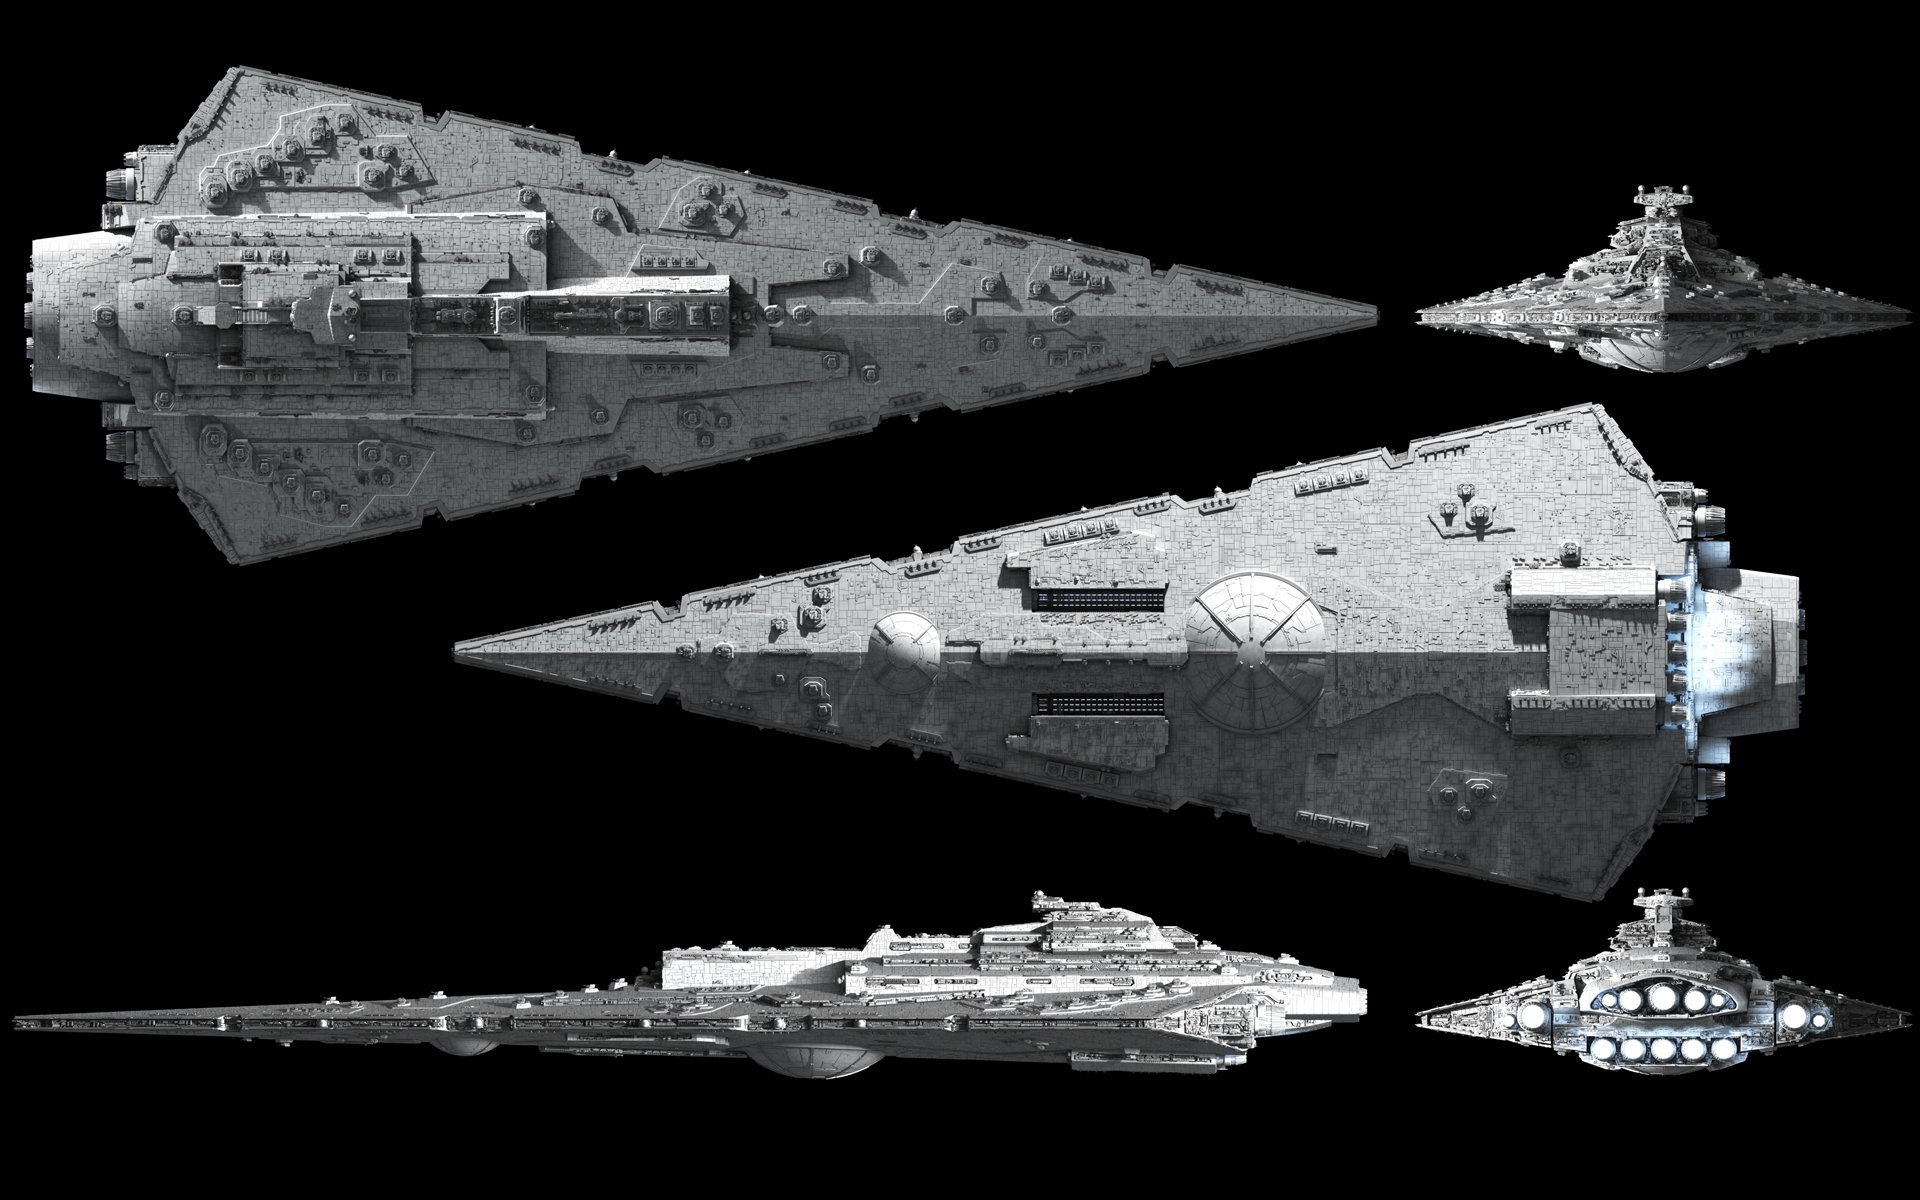 star wars navires fond d'écran,croiseur de bataille,véhicule,bataille navale,avion propulsé par fusée,vaisseau spatial